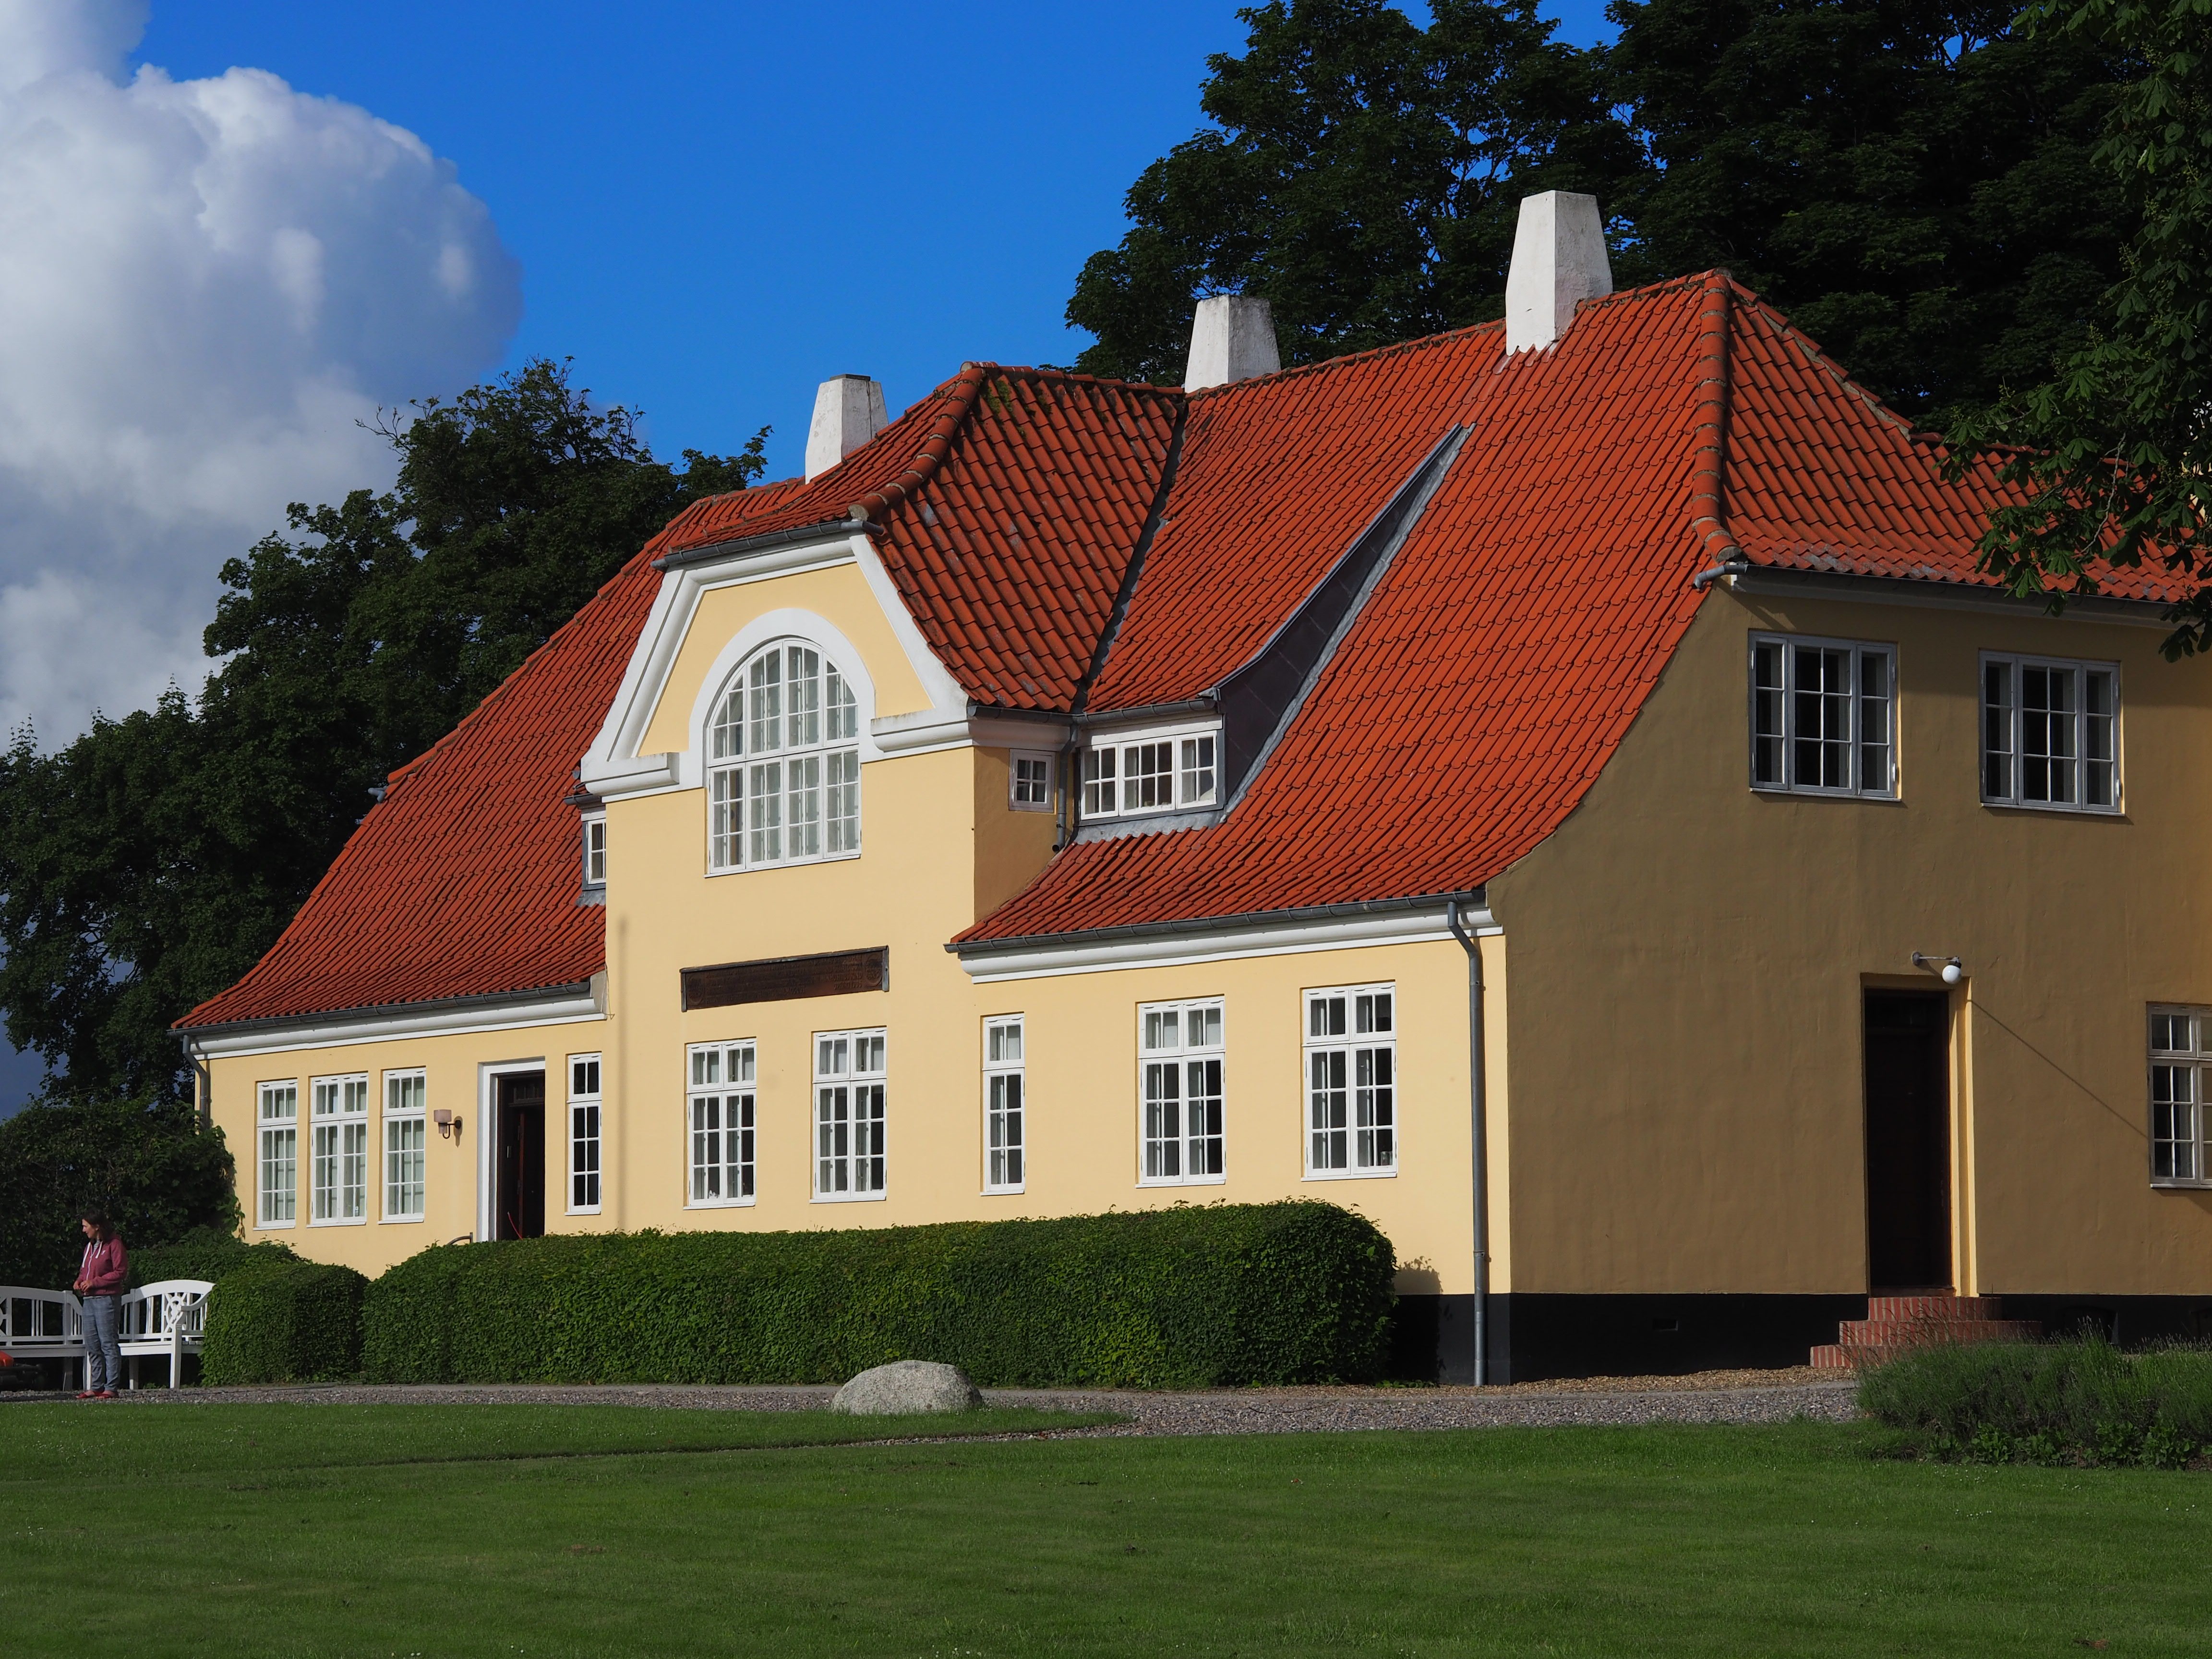 Stuehuset på Jeppe Aakjærs kunstnerhjem ’Jenle’ står på tærsklen til en omfattende renovering. Foto: Michelle Skov